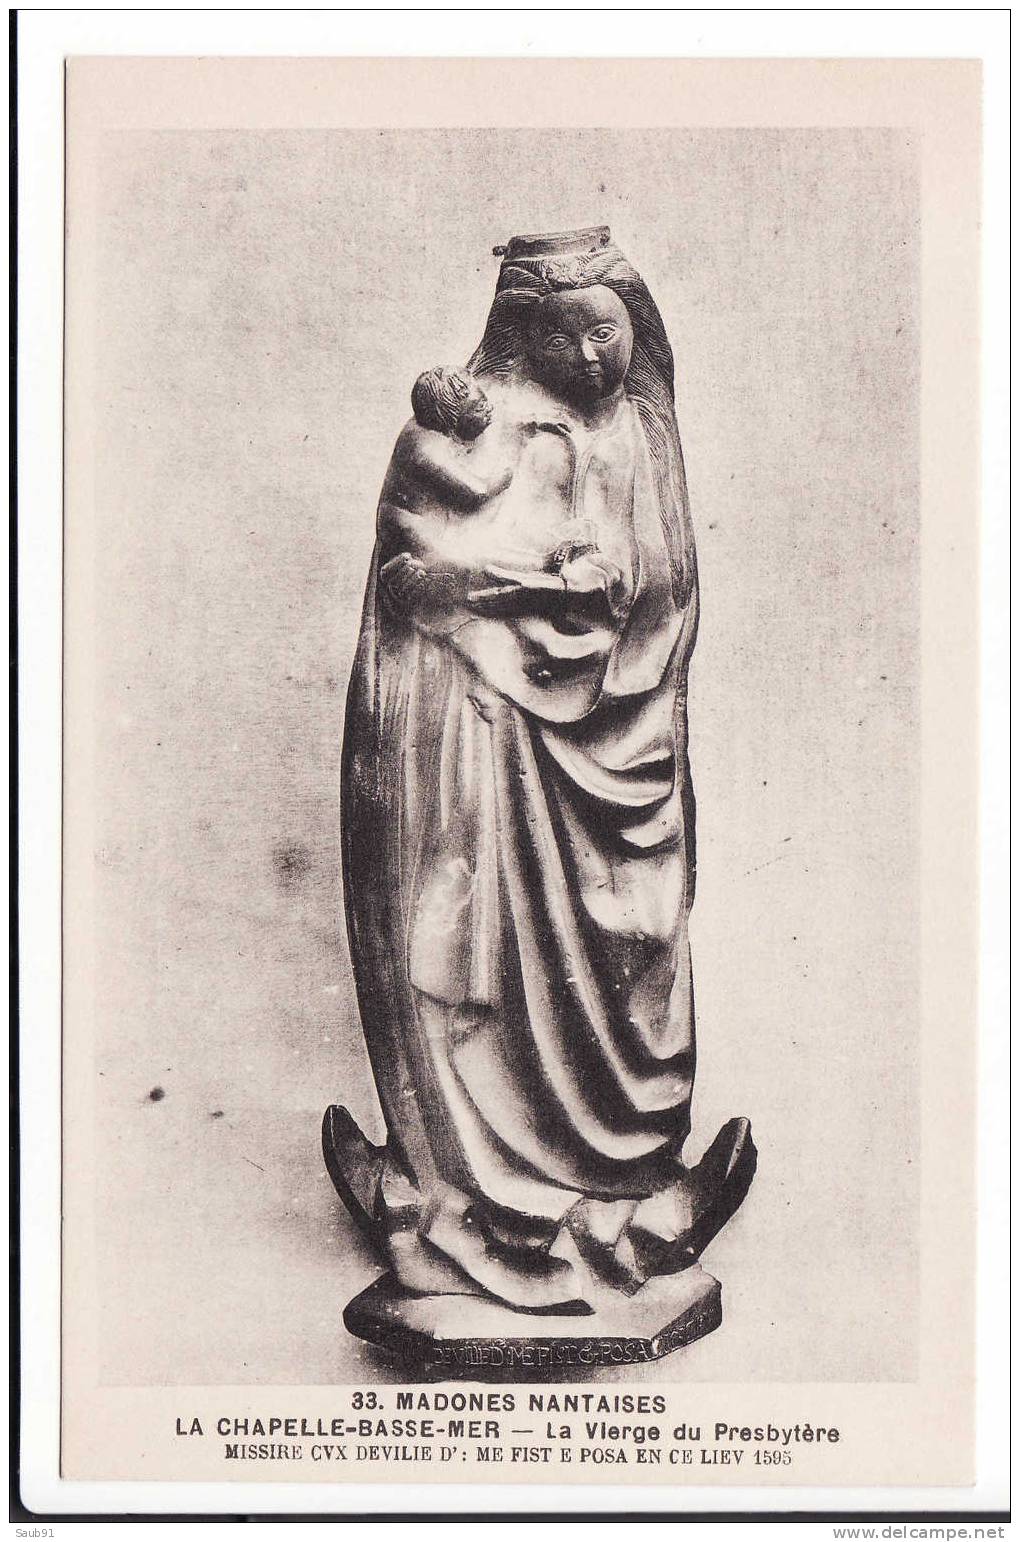 La Chapelle Basse Mer - Madones Nantaises-La Vierge Du Presbytère-N°33-Chapeau,N Antes-Non Circulé-Réf:1625bis - La Chapelle Basse-Mer